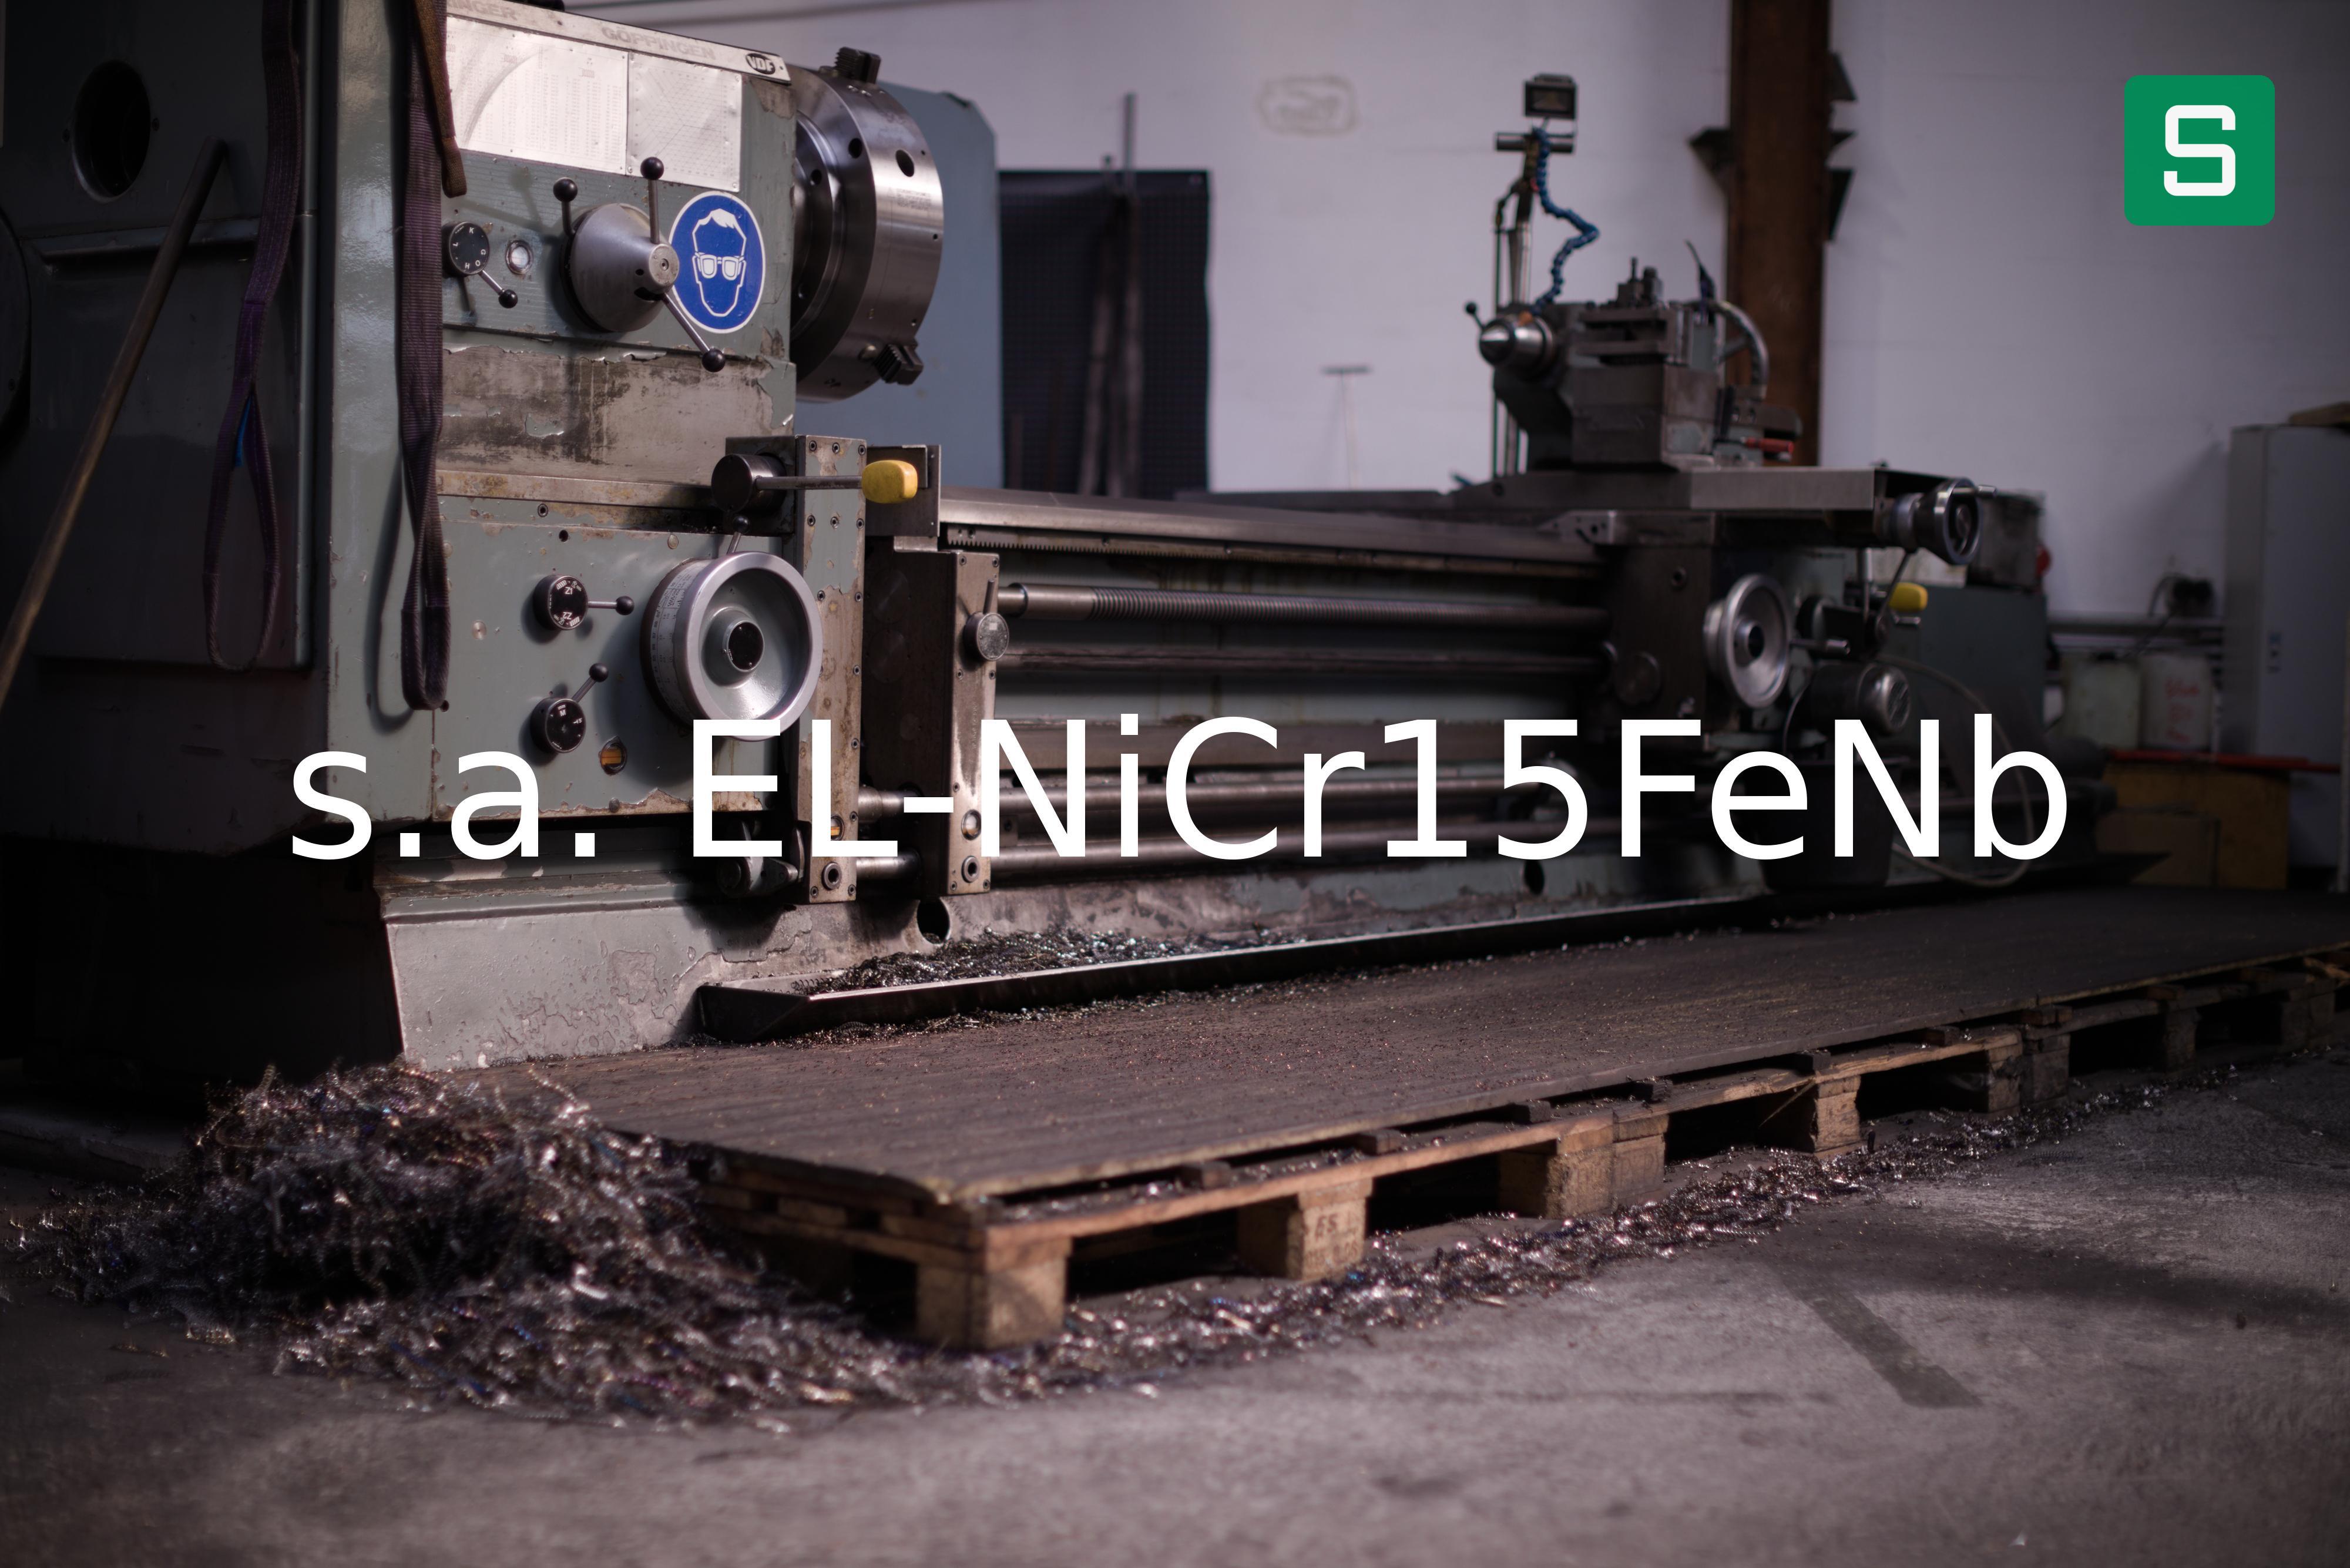 Stahlwerkstoff: s.a. EL-NiCr15FeNb